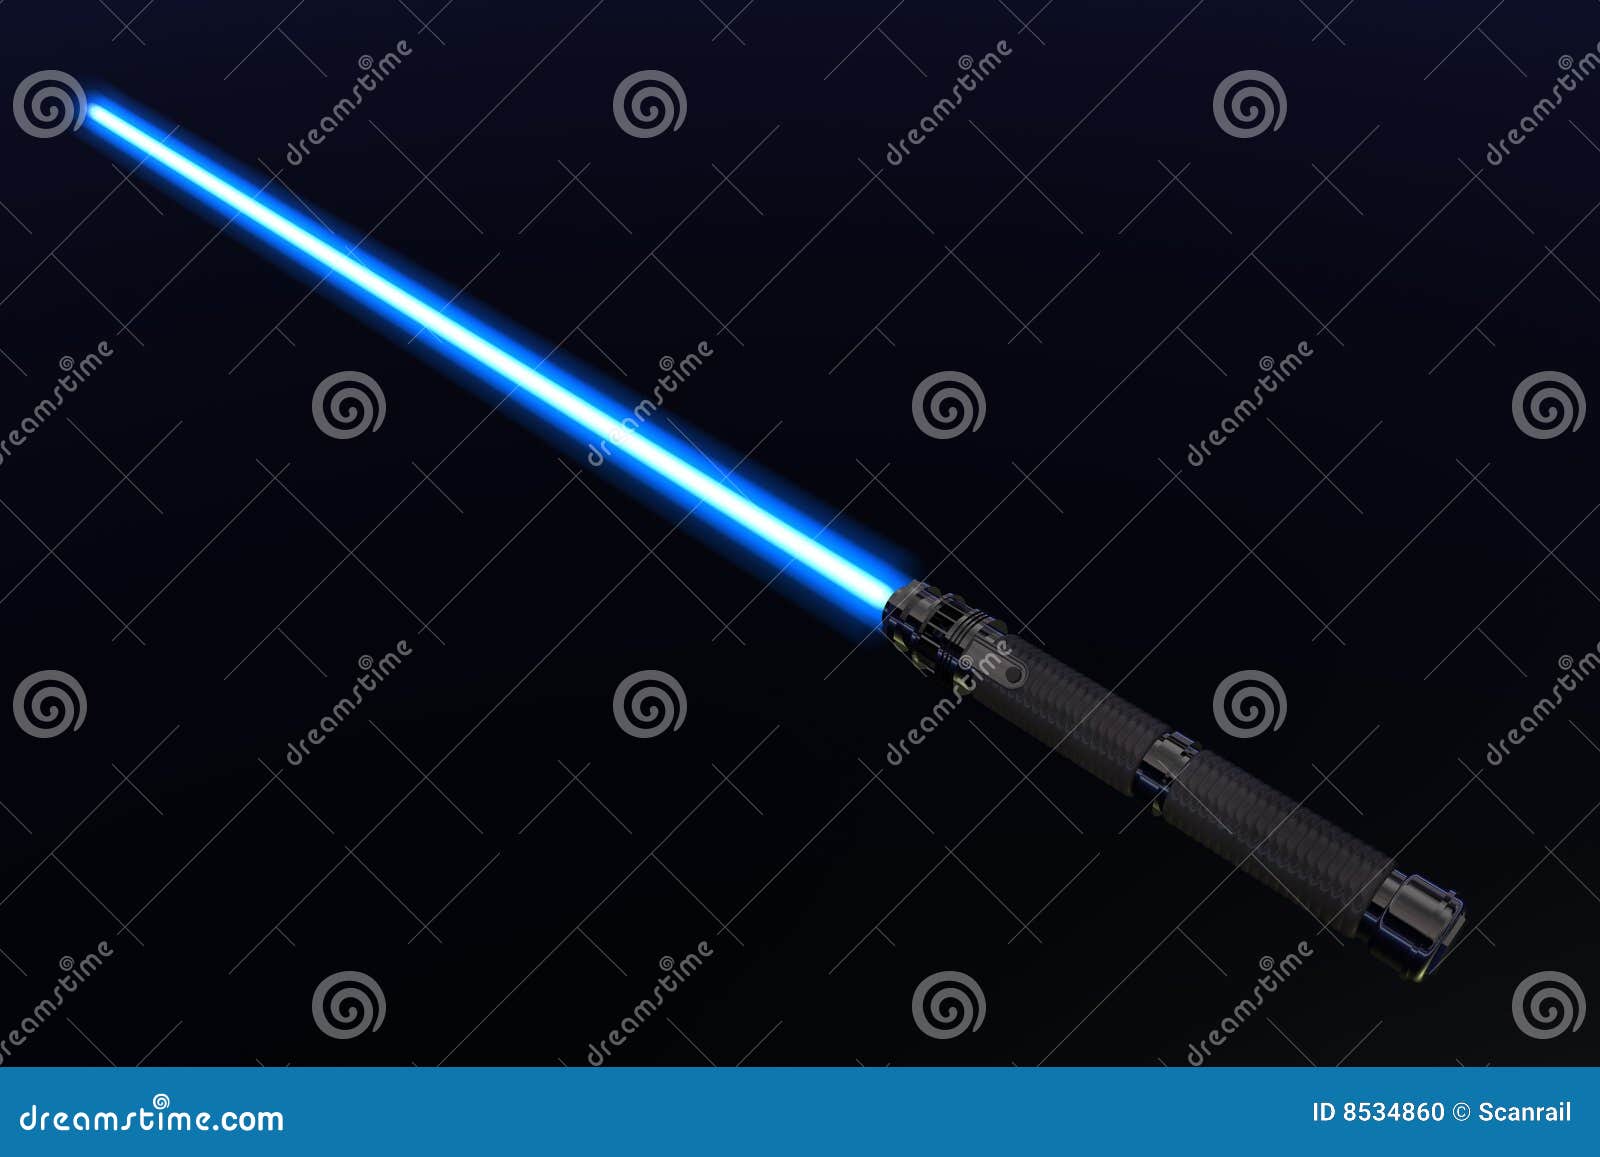 light saber